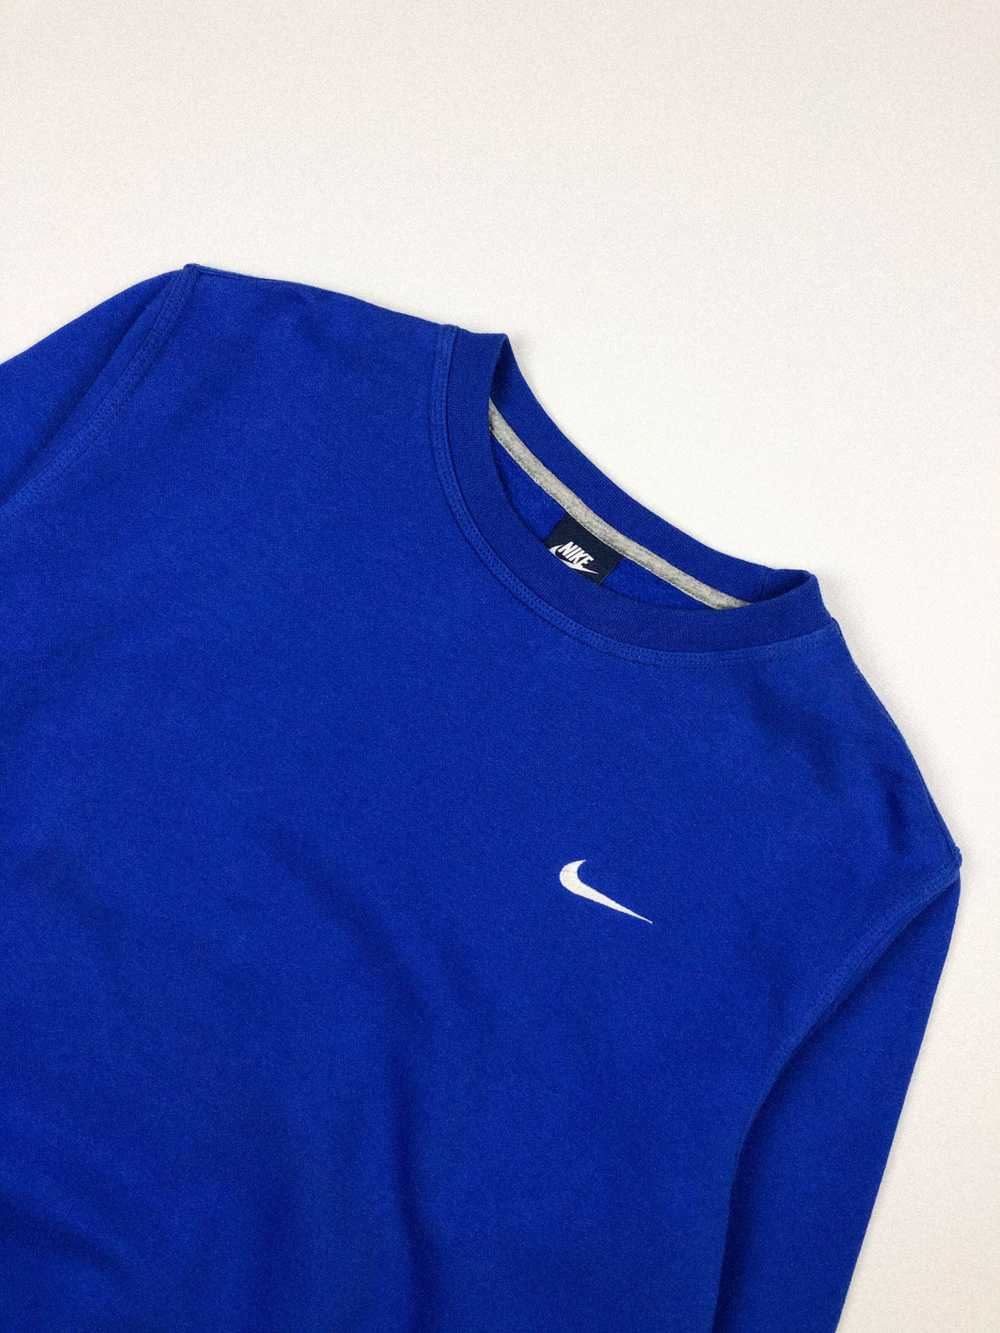 Nike × Vintage Vintage Nike Blue Sweatshirt - image 1